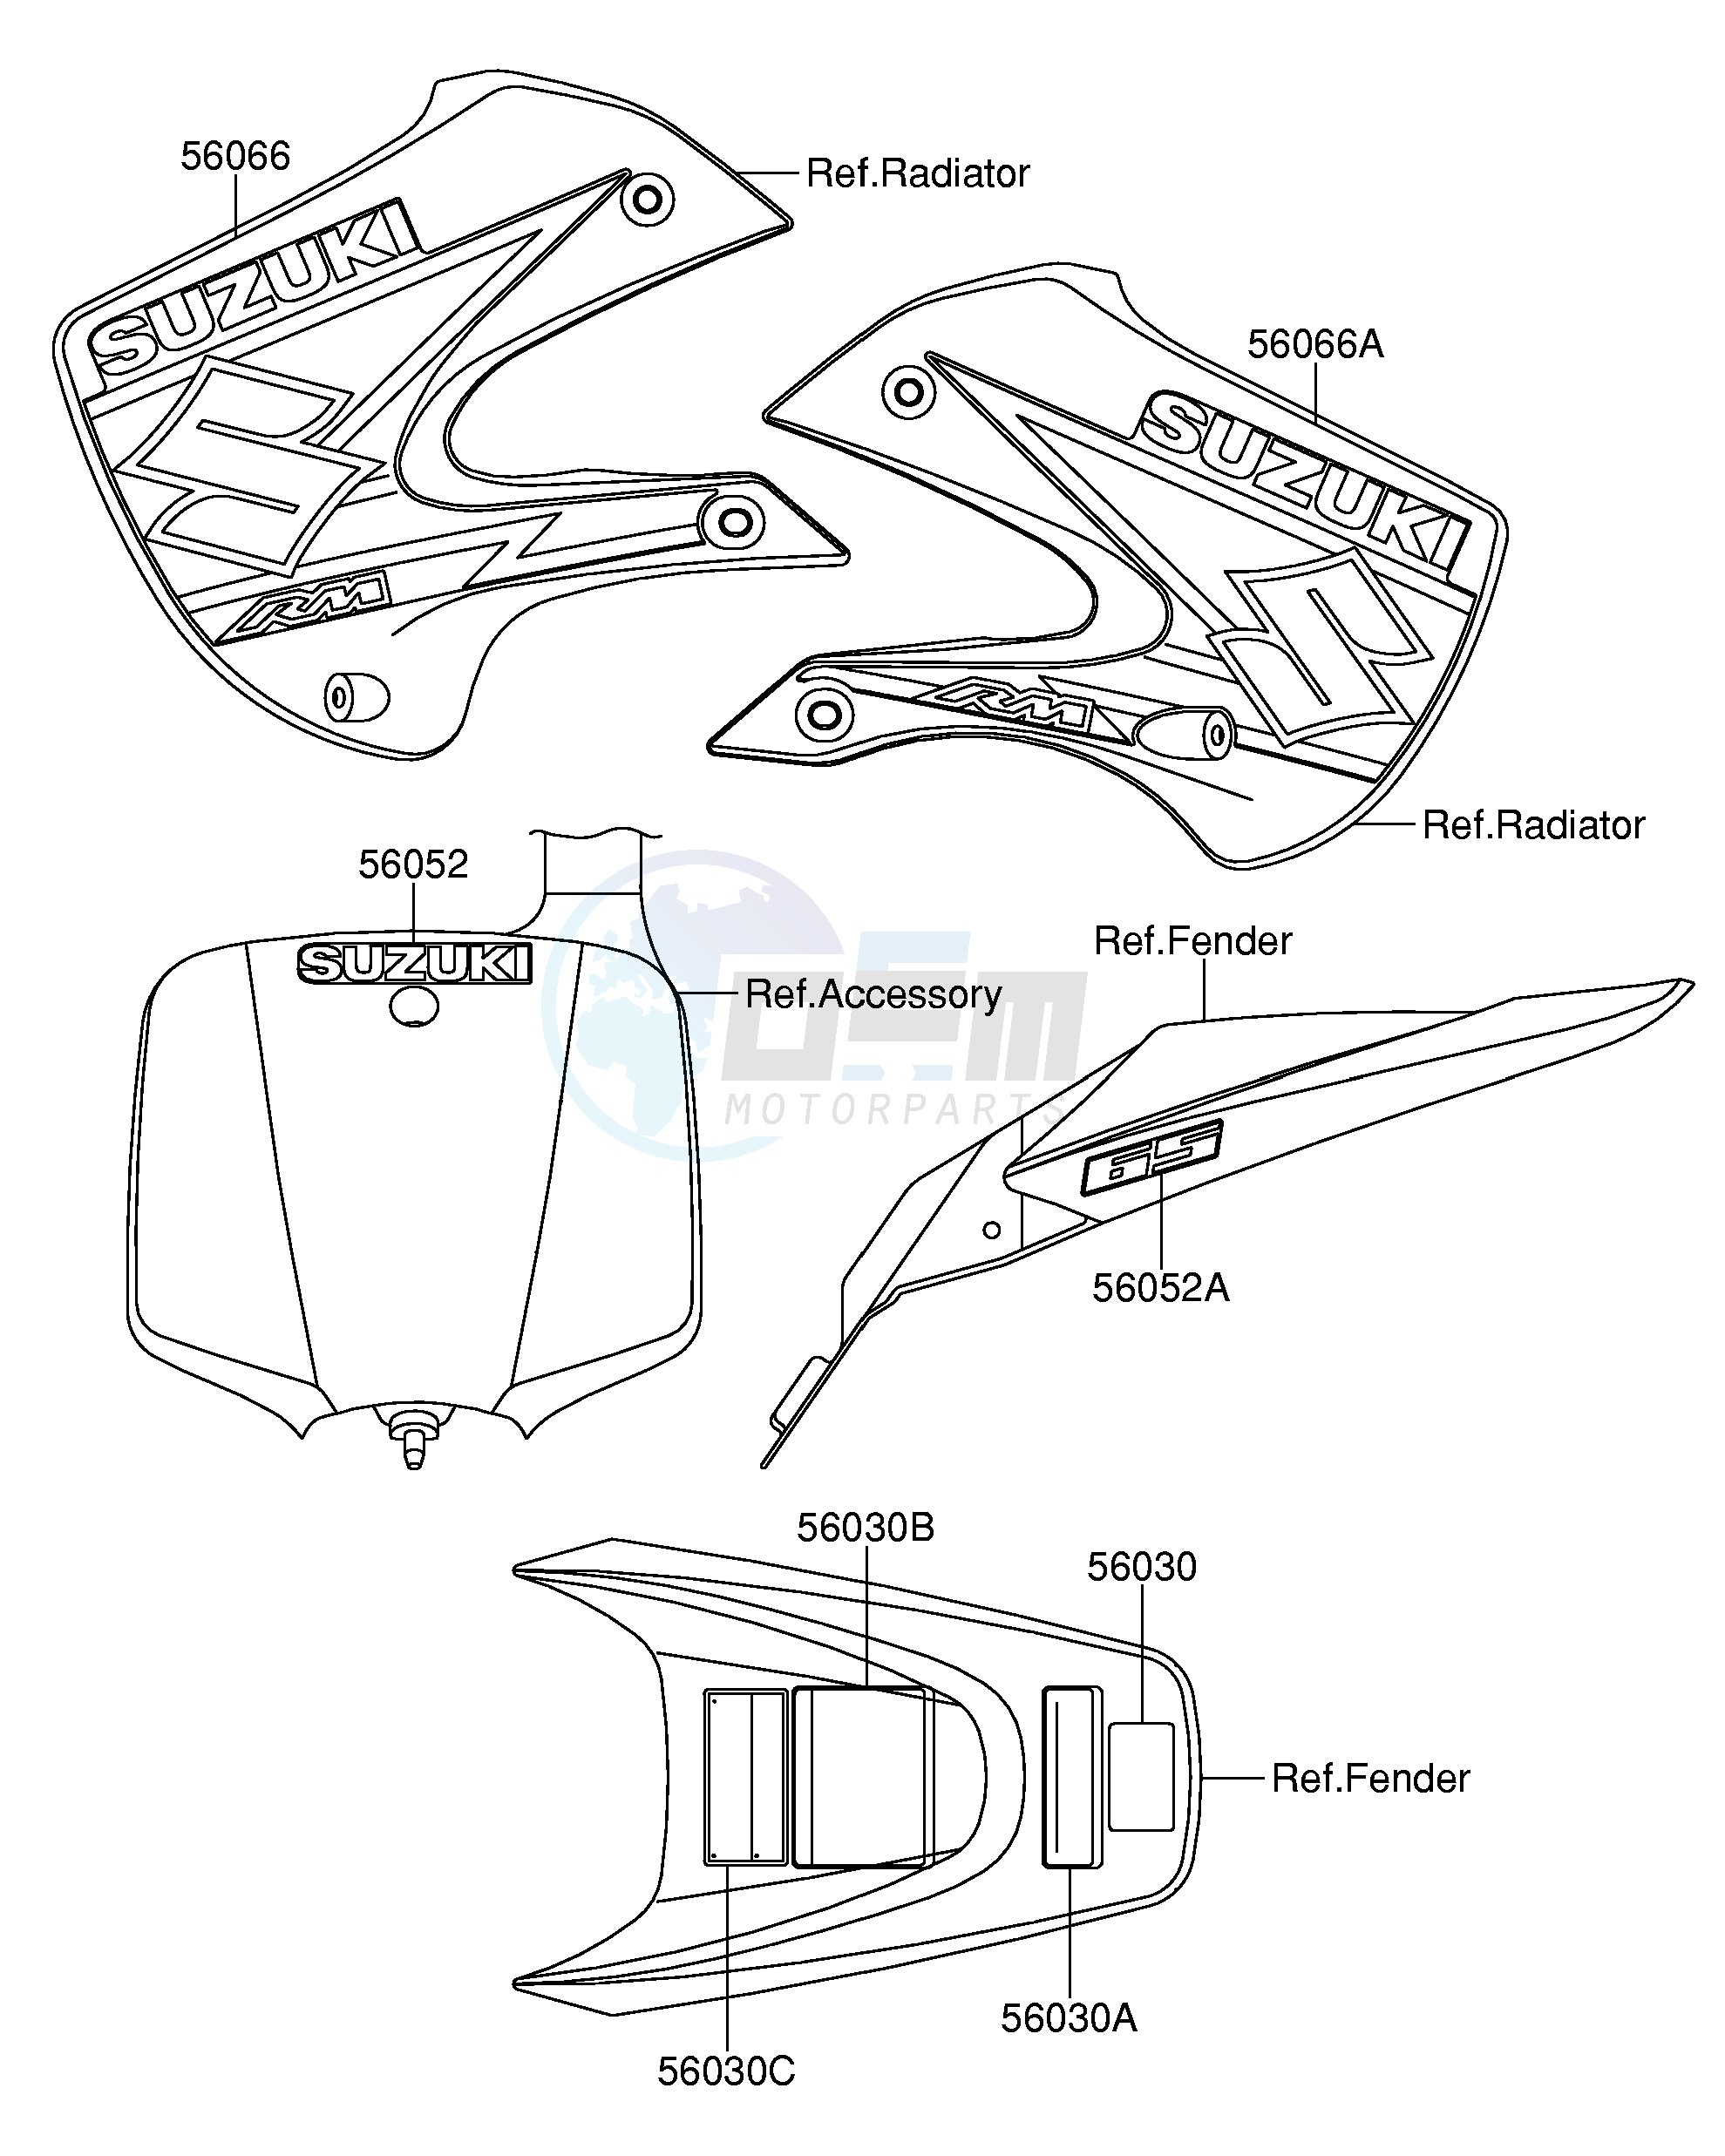 LABEL(RM65K3) blueprint